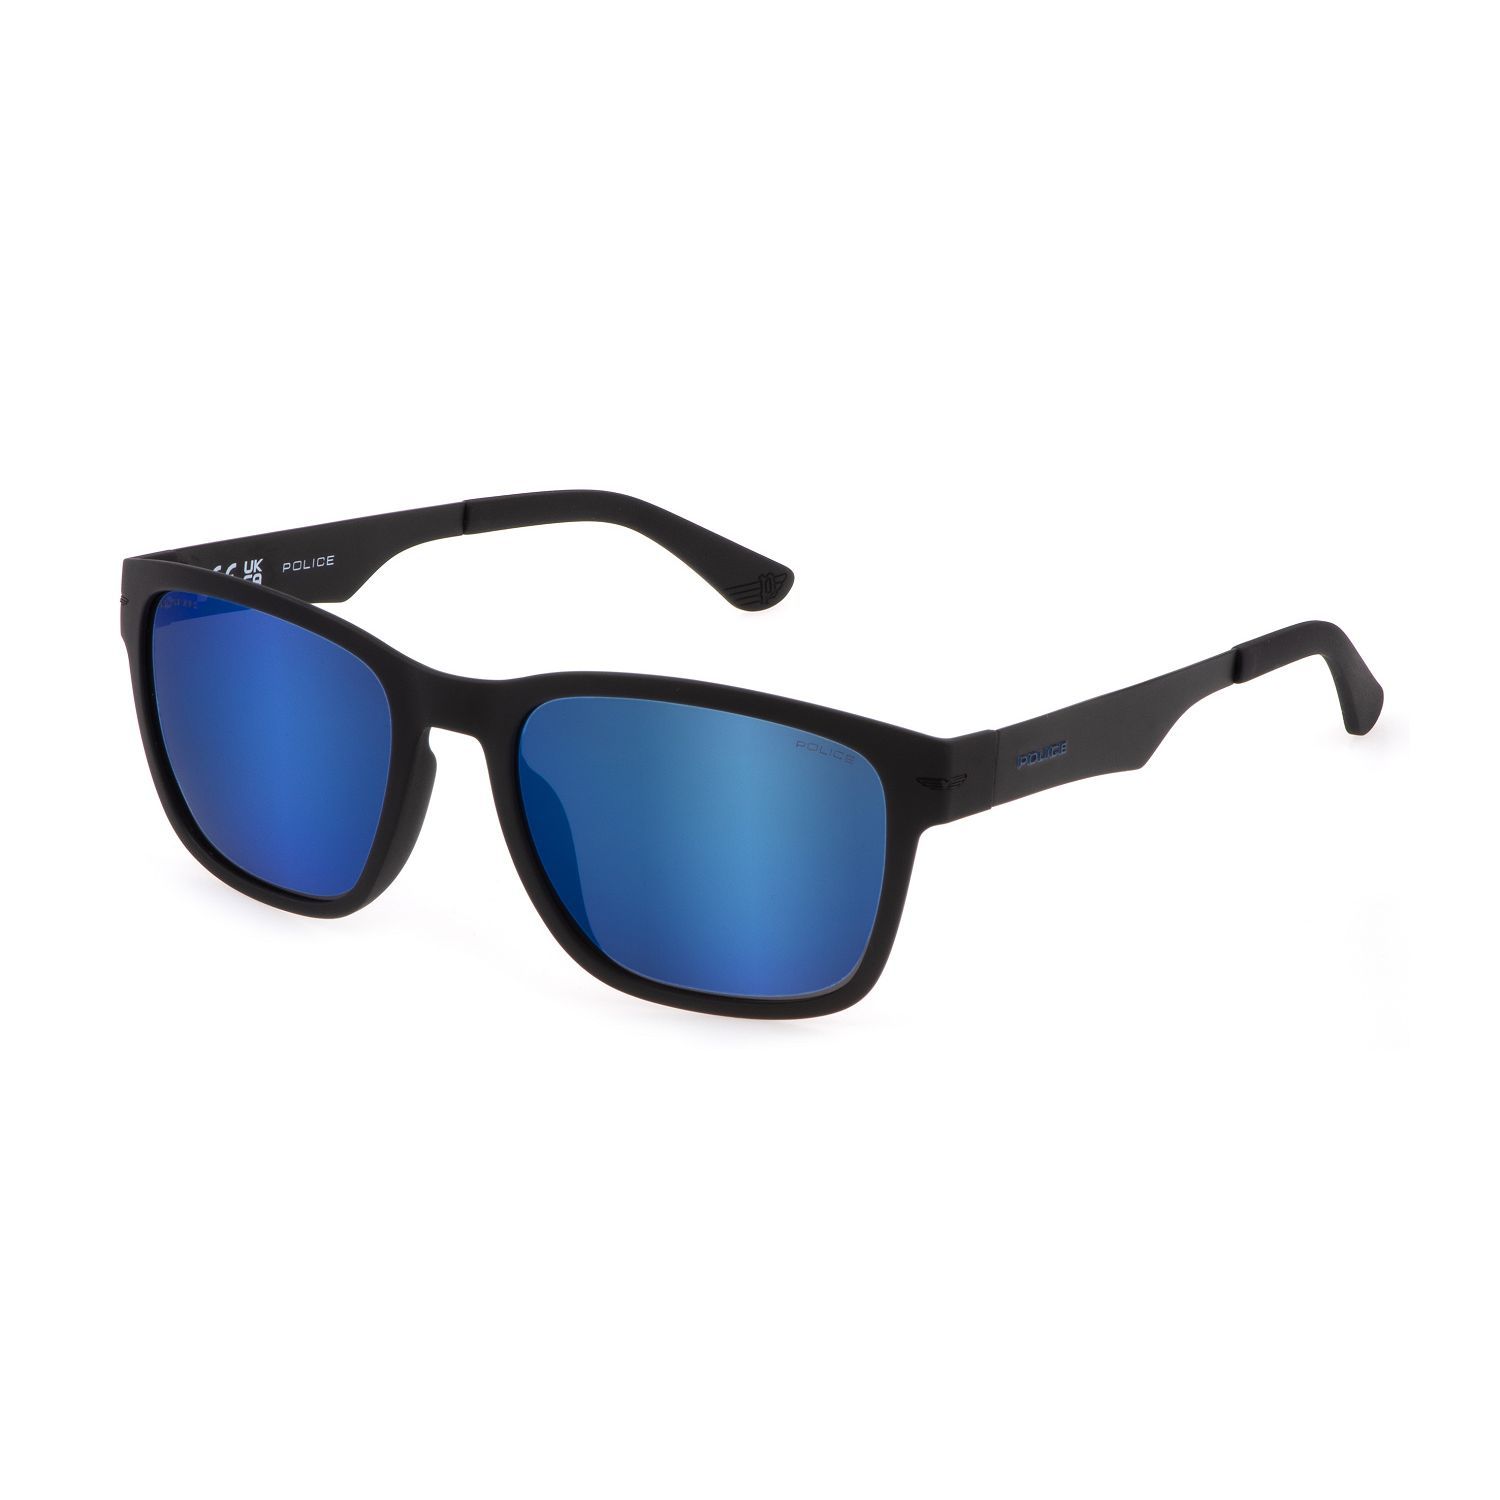 SPLL09V Square Sunglasses U28P - size 56